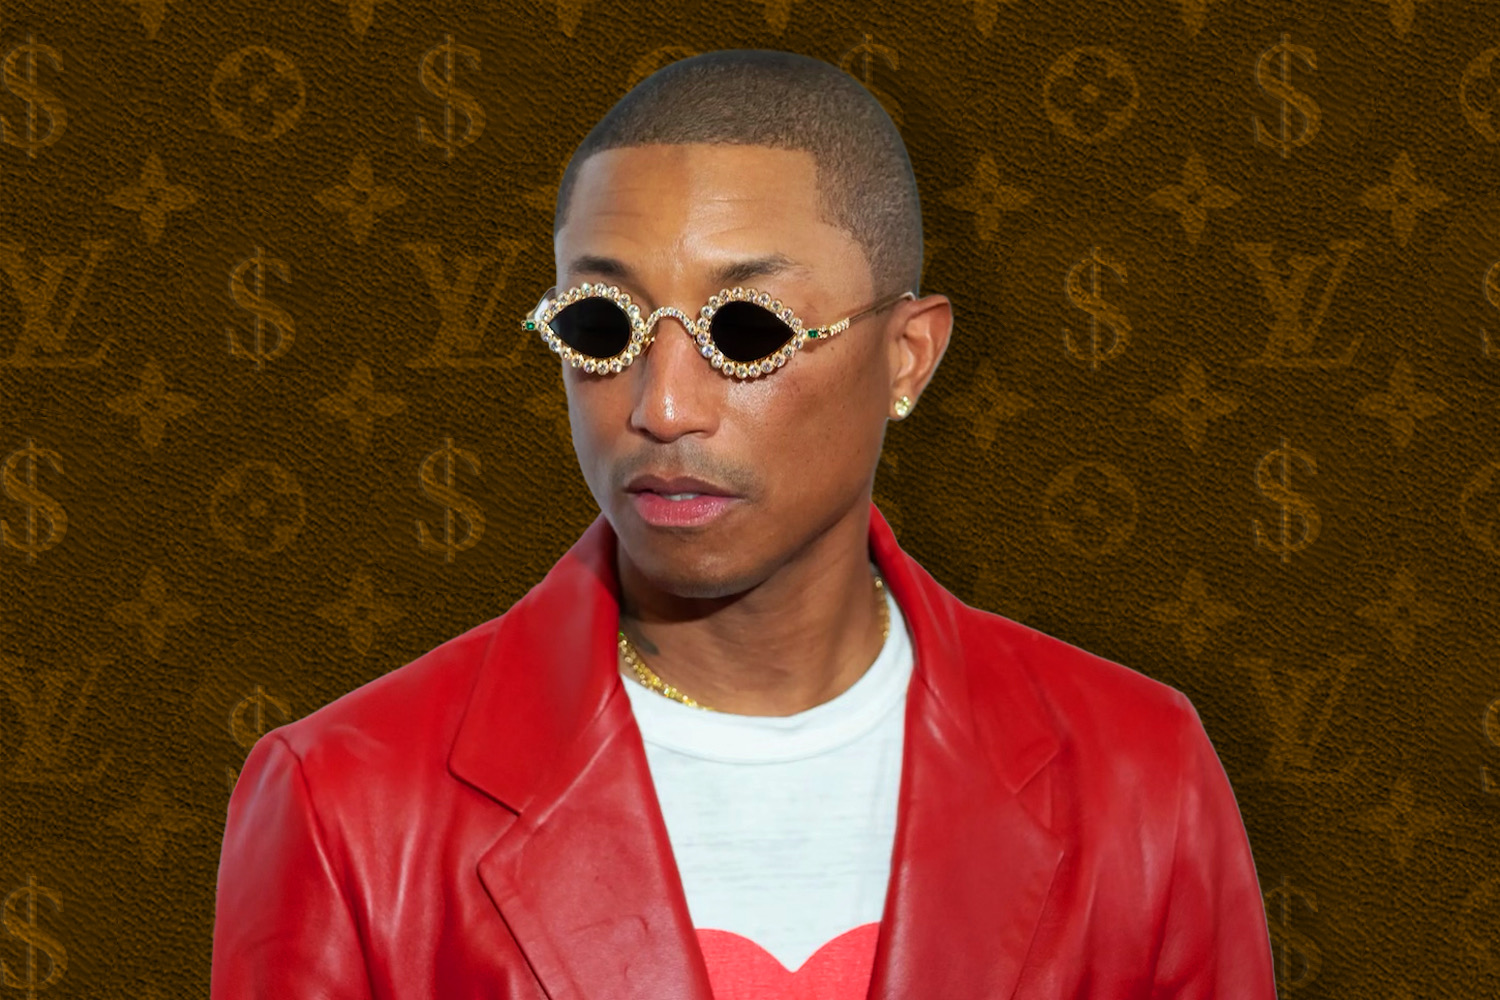 Why Louis Vuitton Chose Pharrell as Creative Director 